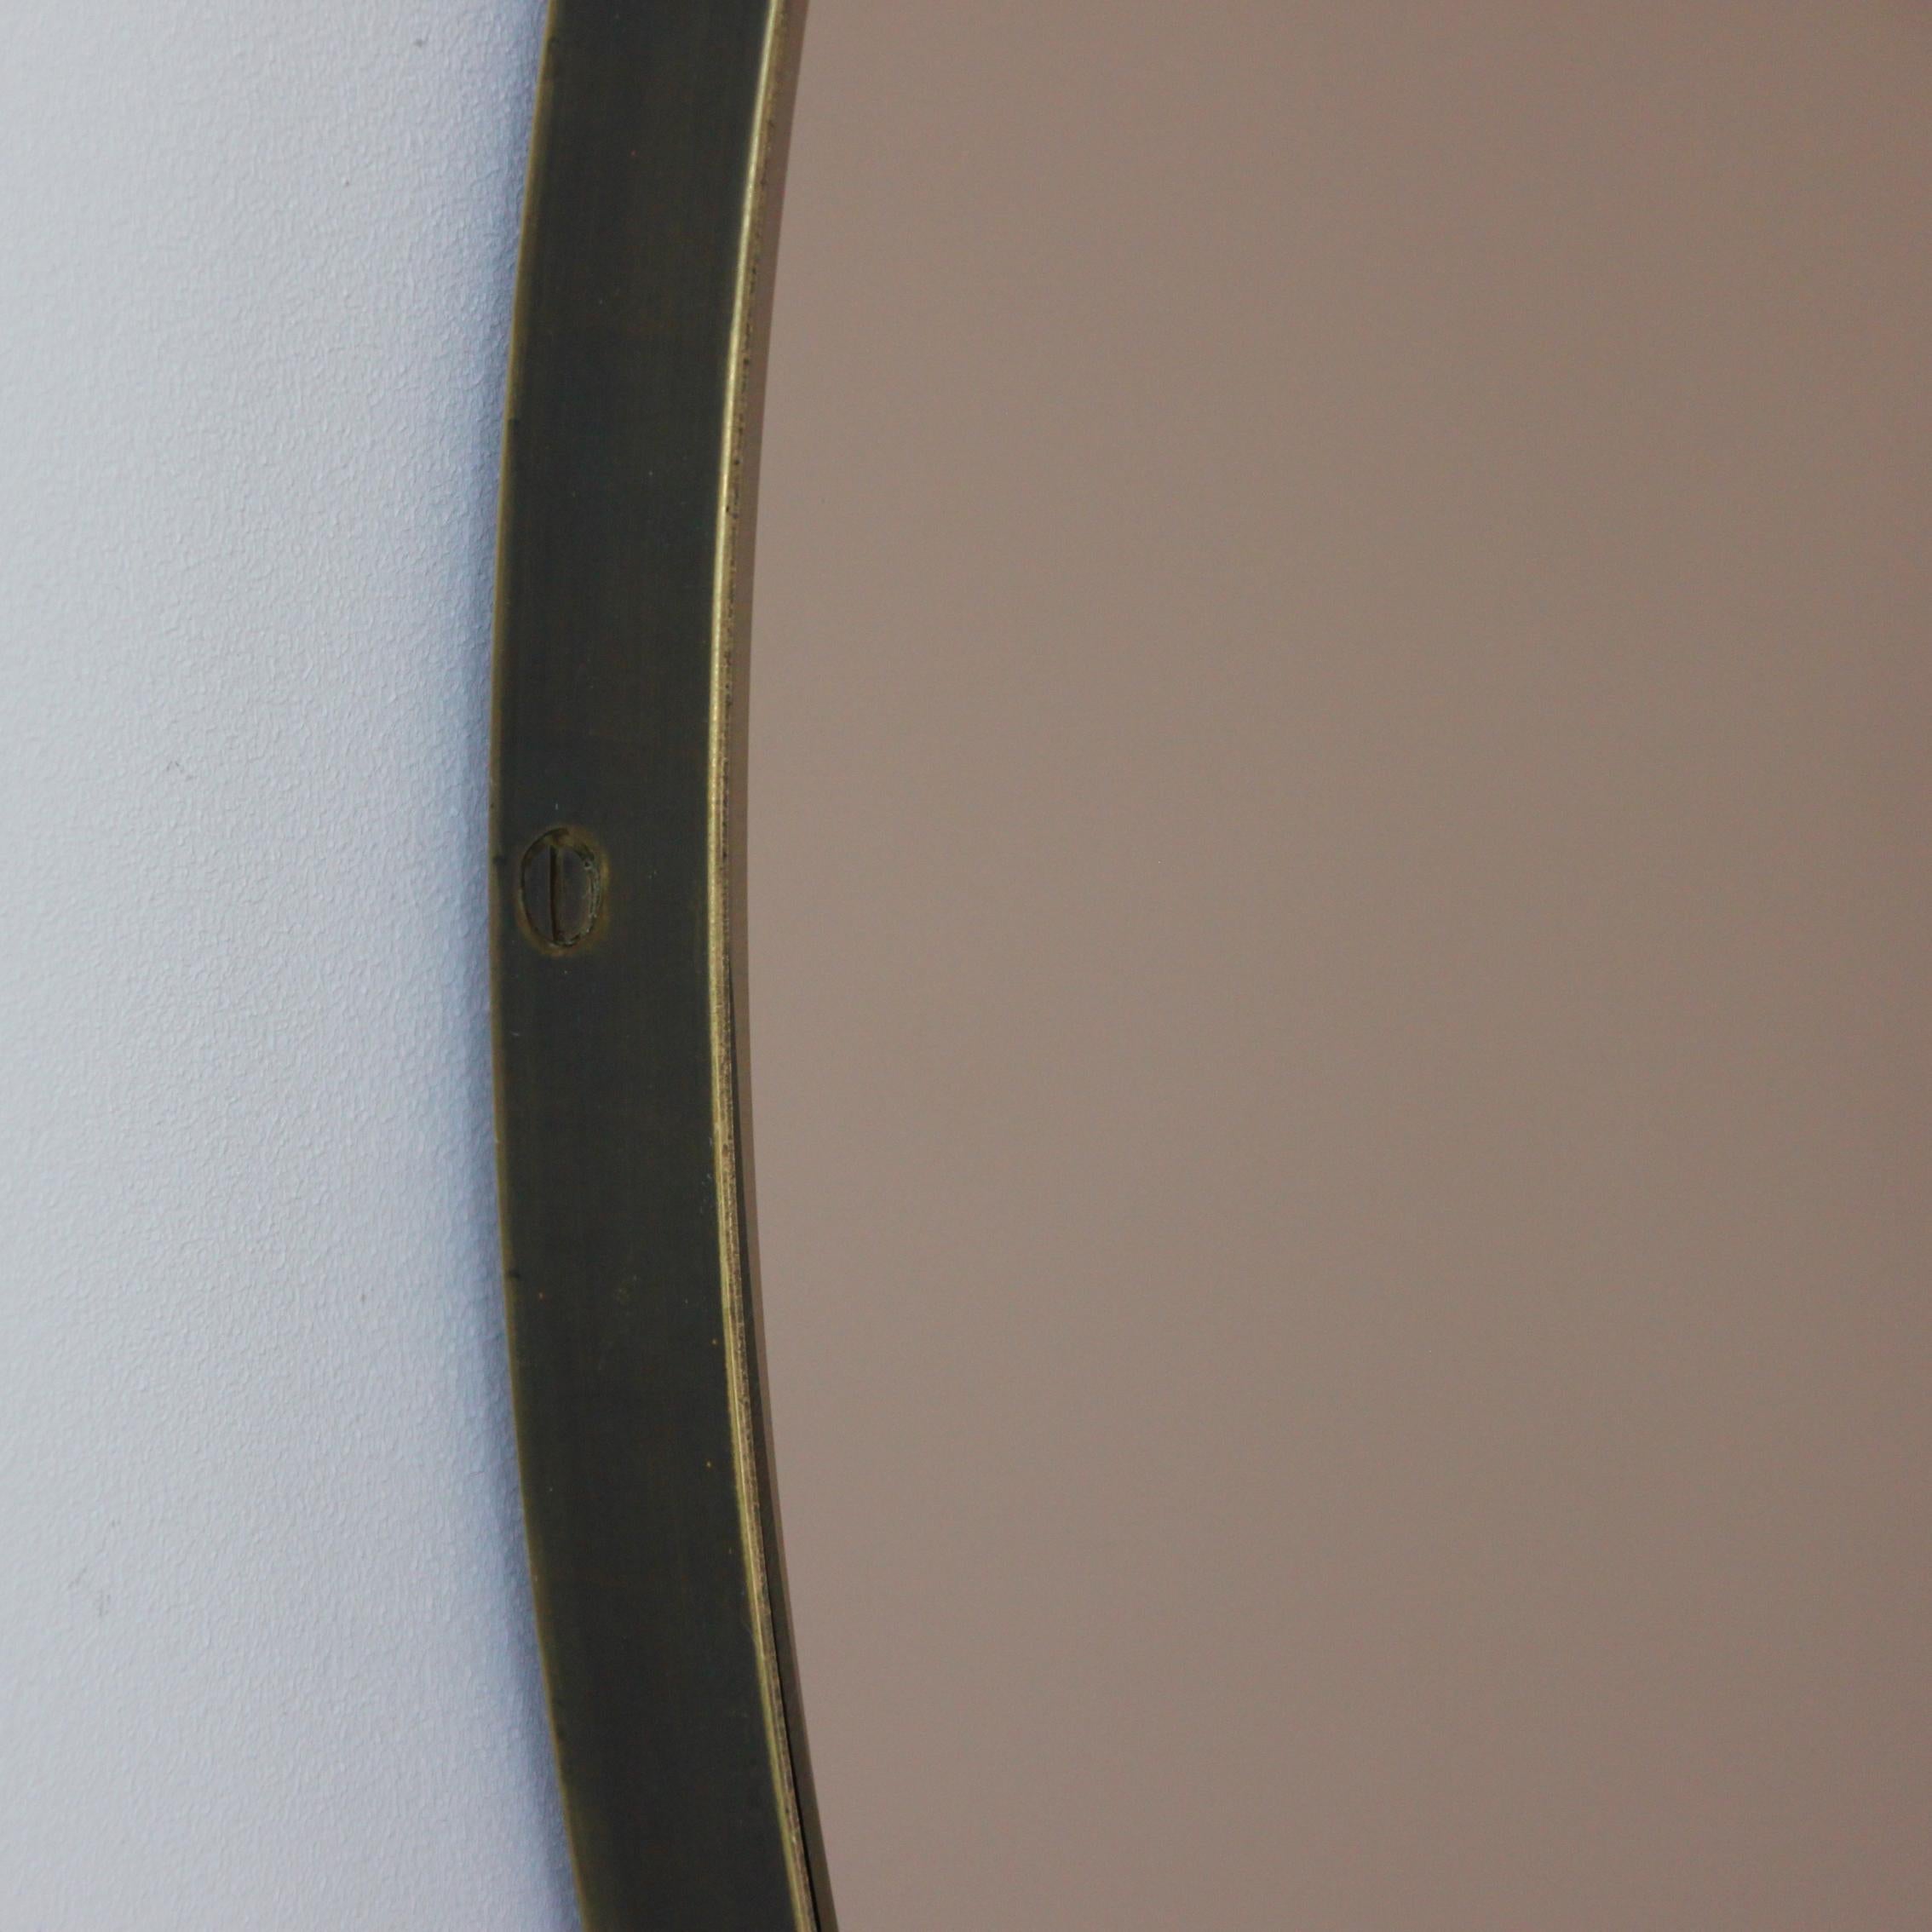 Zeitgenössischer runder Orbis™-Spiegel in Bronze mit einem Rahmen aus massivem Messing mit bronzefarbener Patina. Entworfen und handgefertigt in London, UK.

Die mittelgroßen, großen und extragroßen Spiegel (60, 80 und 100 cm) sind mit einem